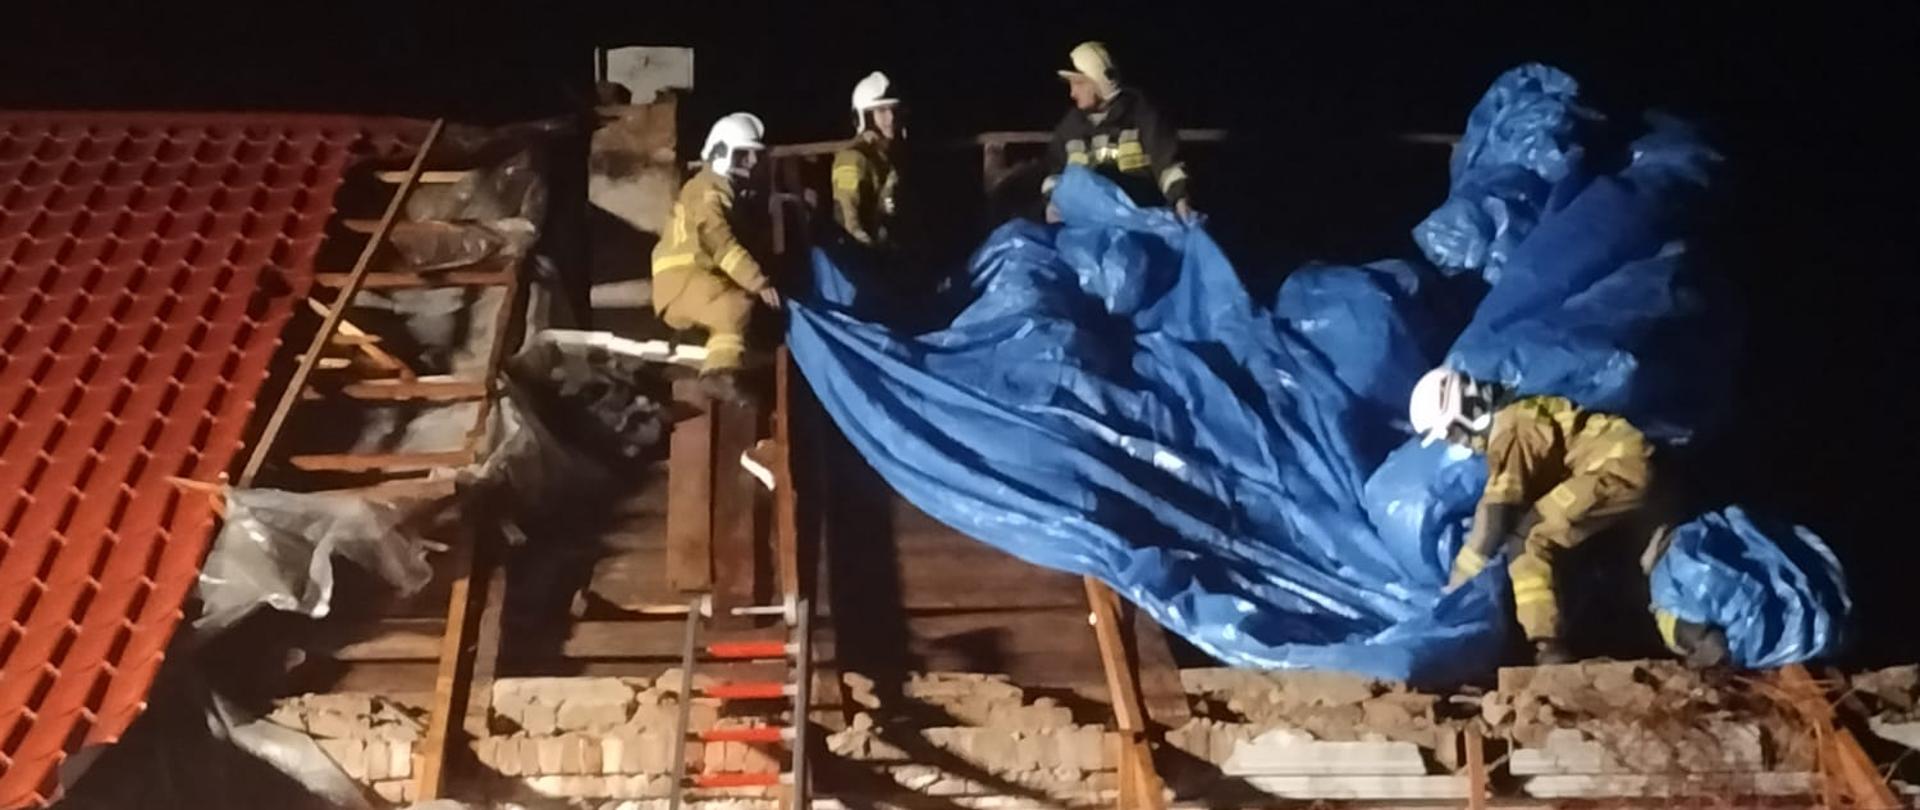 Na zdjęciu widzimy strażaków pracujących przy zabezpieczeniu plandeką dachu budynku mieszkalnego. Dach uszkodzony w wyniku porywistych wiatrów.